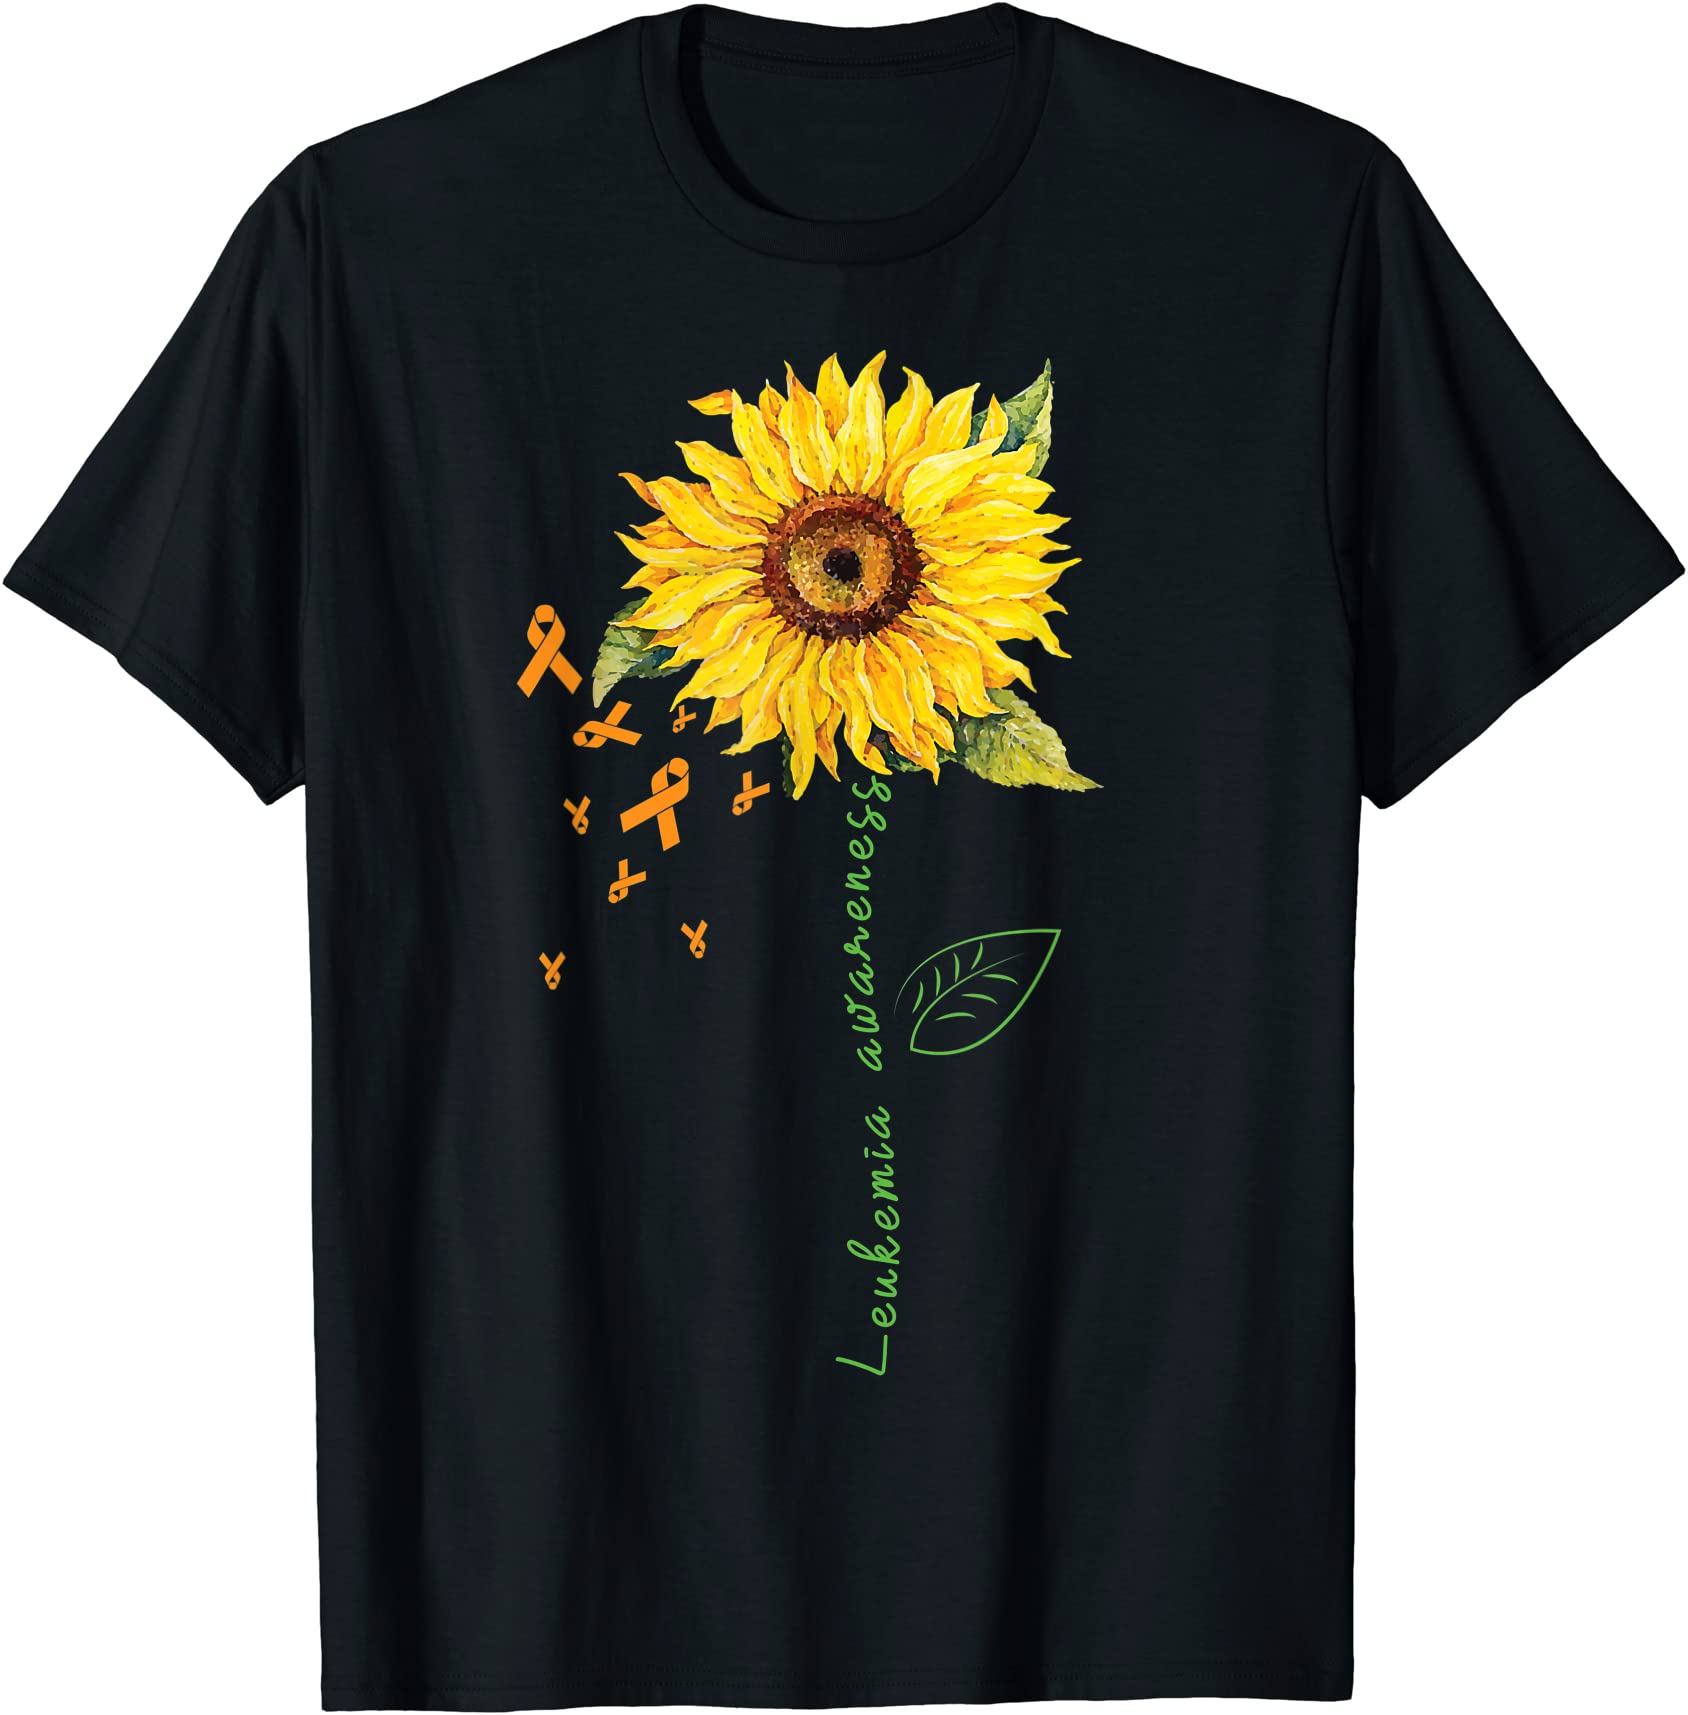 september leukemia cancer awareness month sunflower t shirt men - Buy t ...